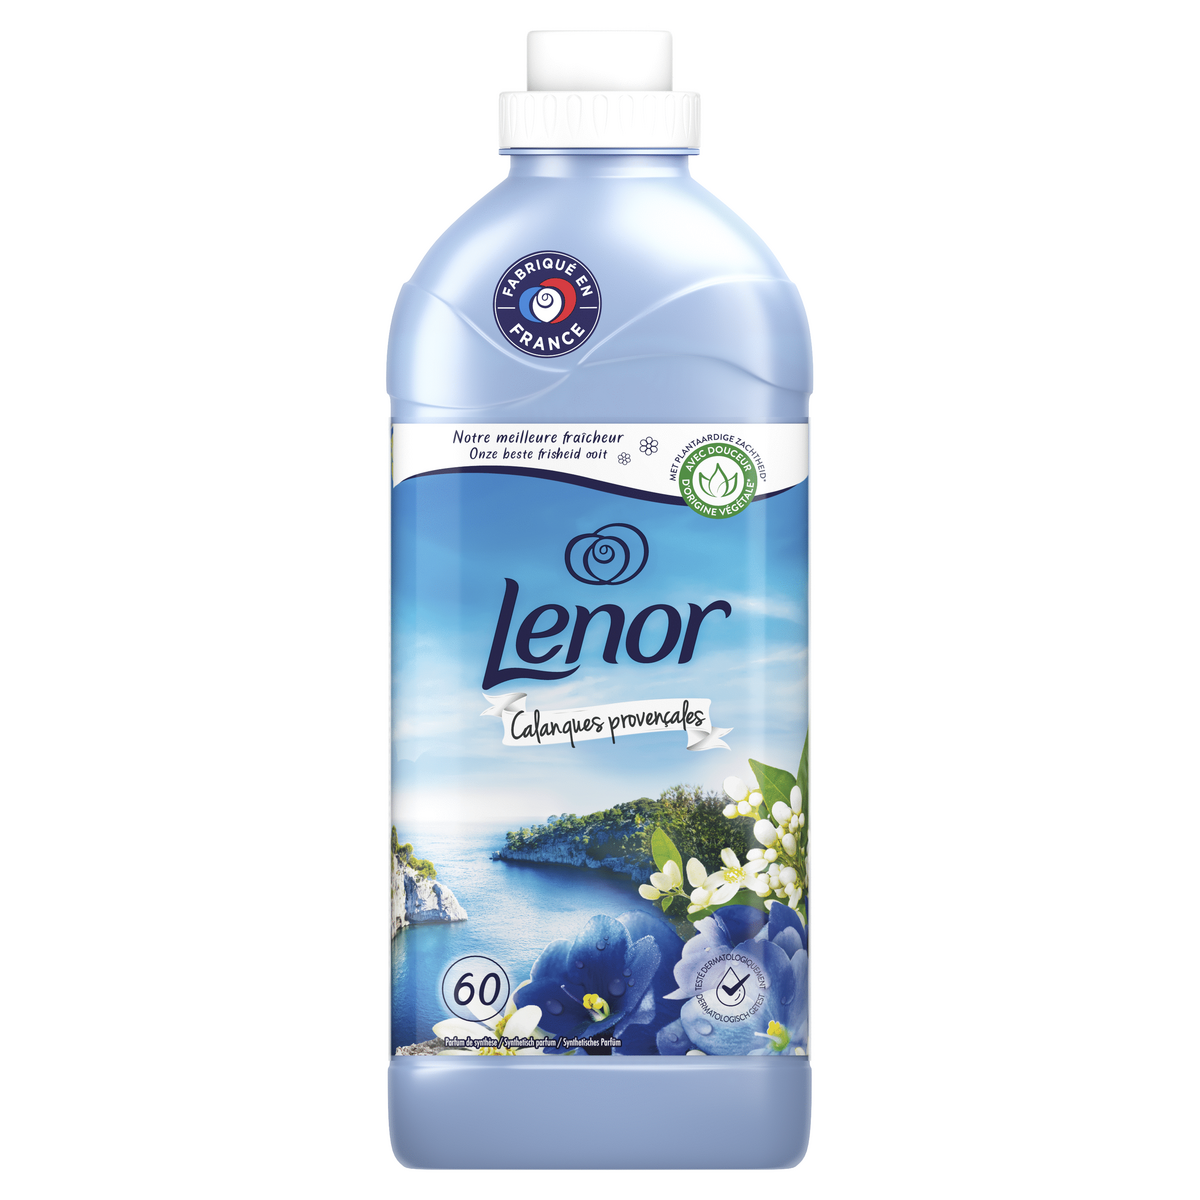 LENOR Adoucissant liquide Calanques provençale 60 lavages 1.38l